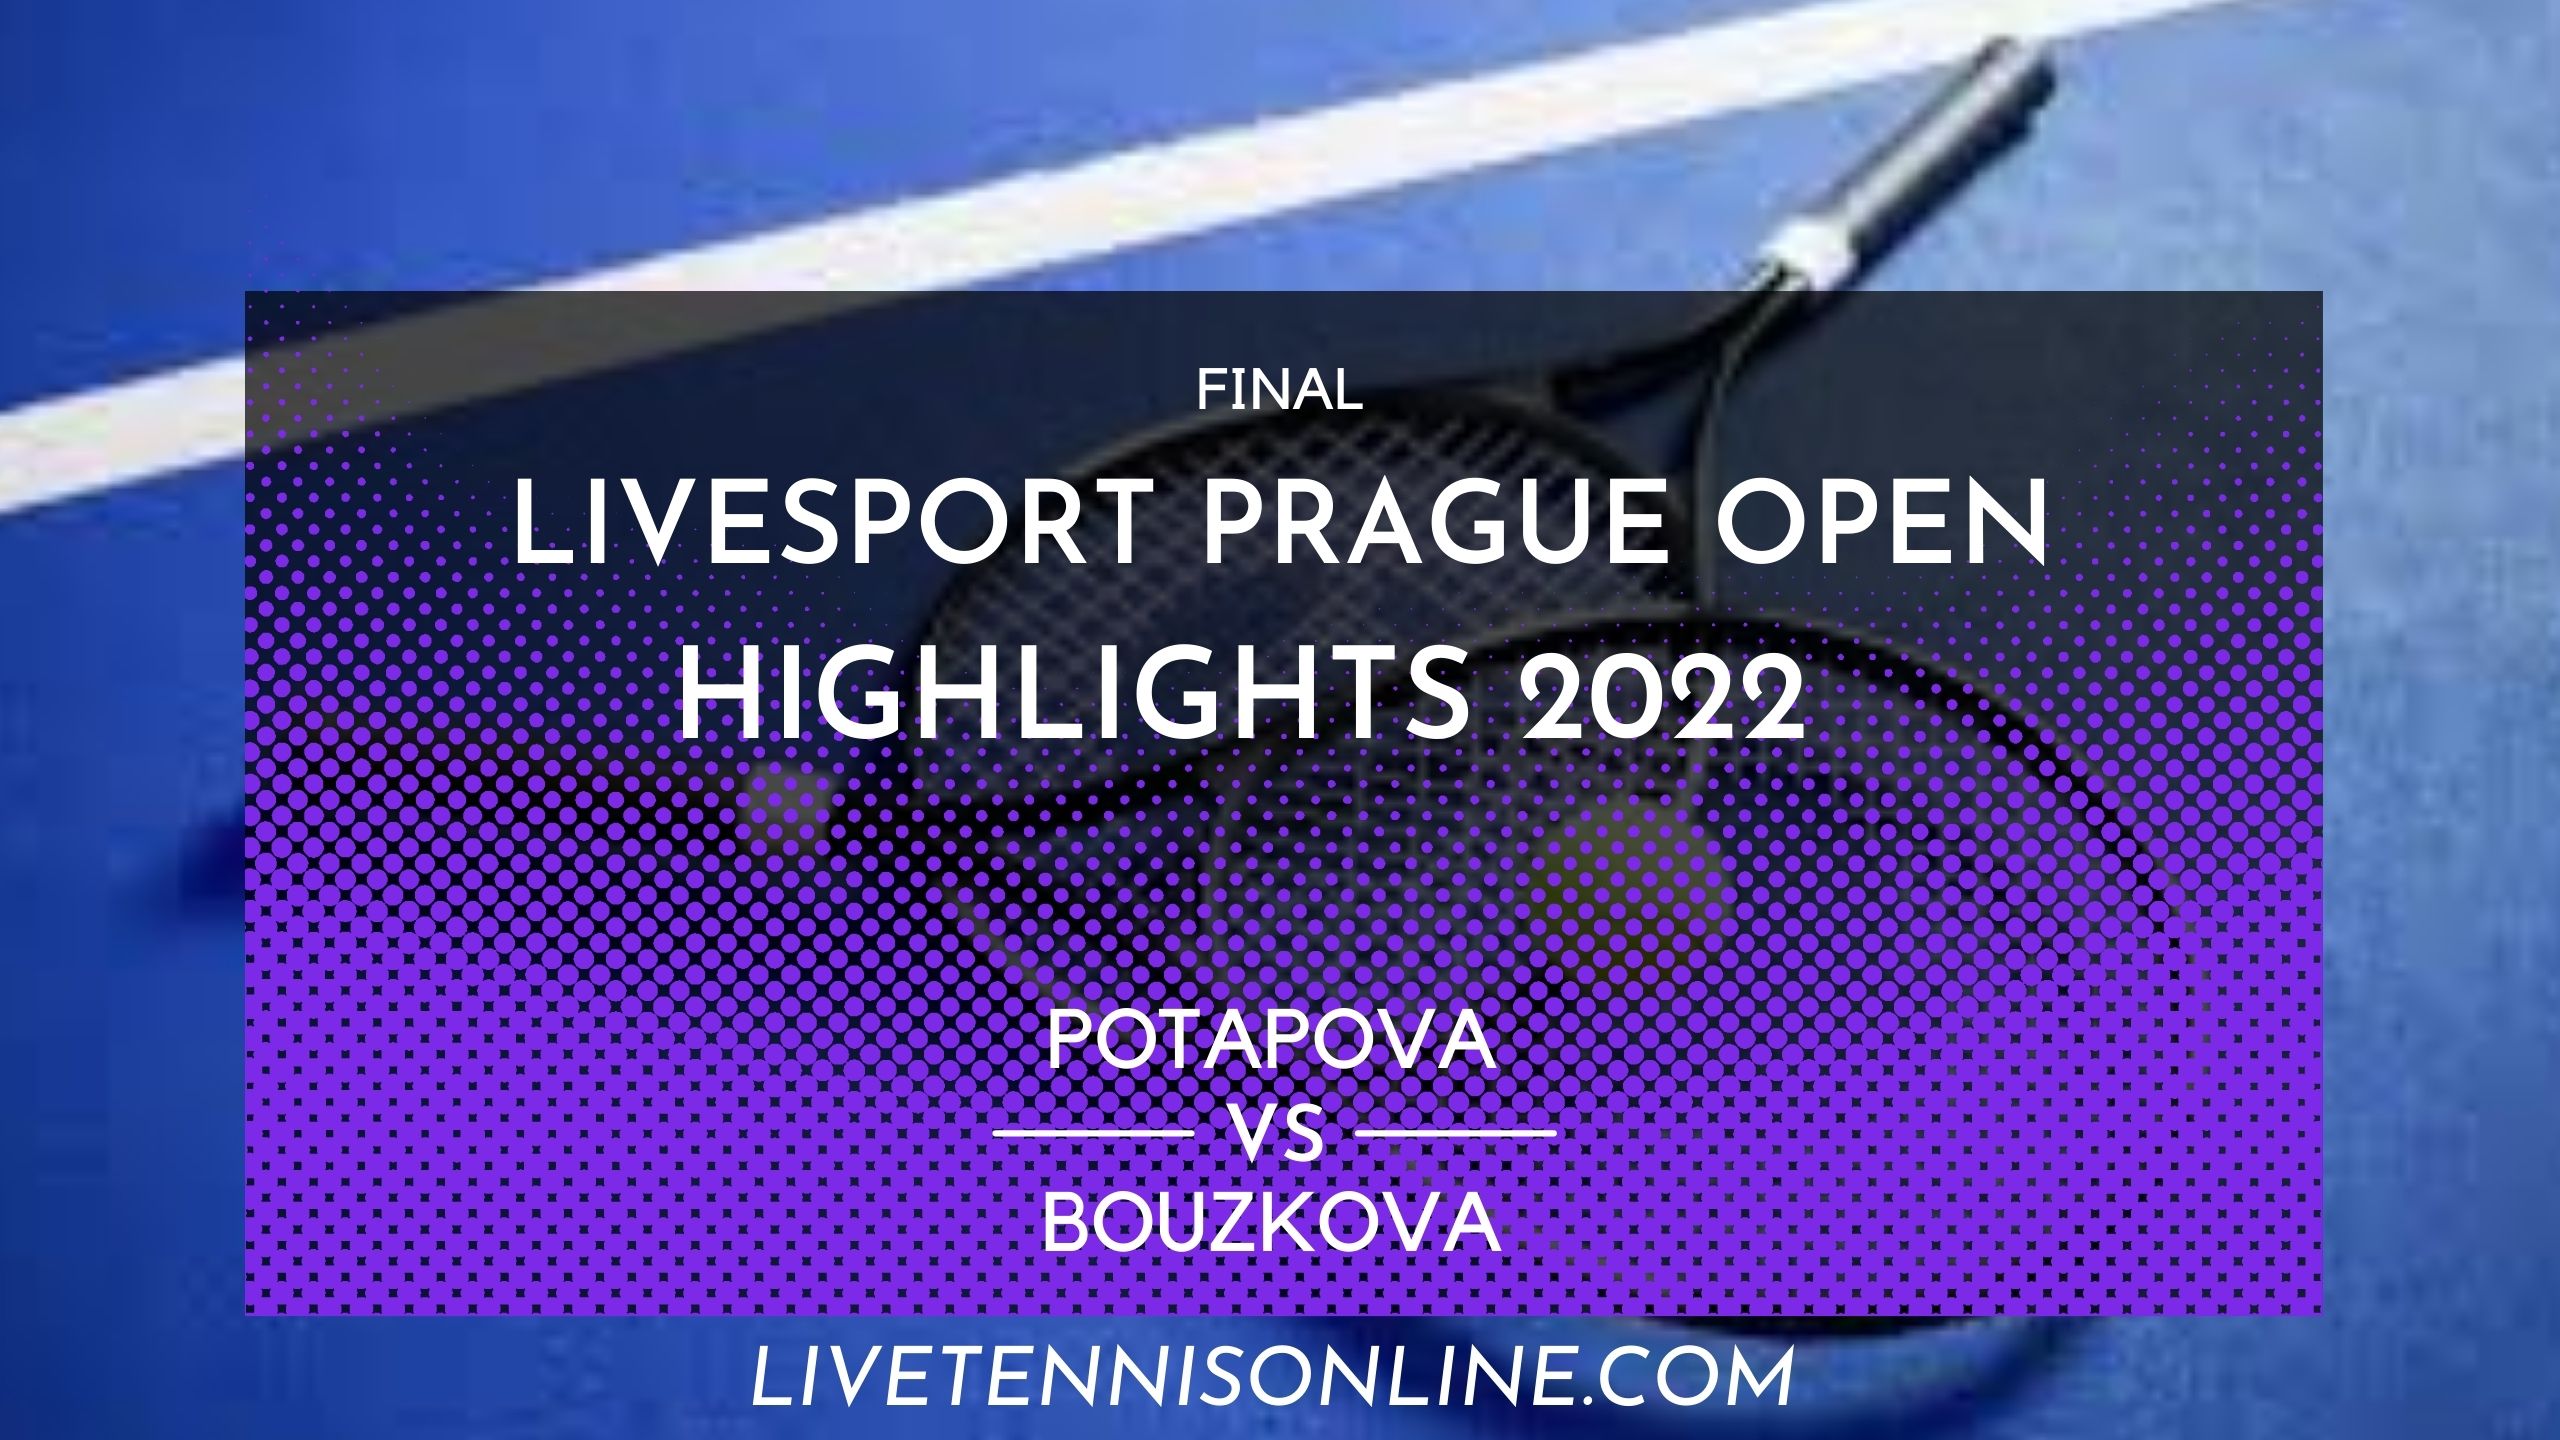 Potapova Vs Bouzkova Final Highlights 2022 Prague Open